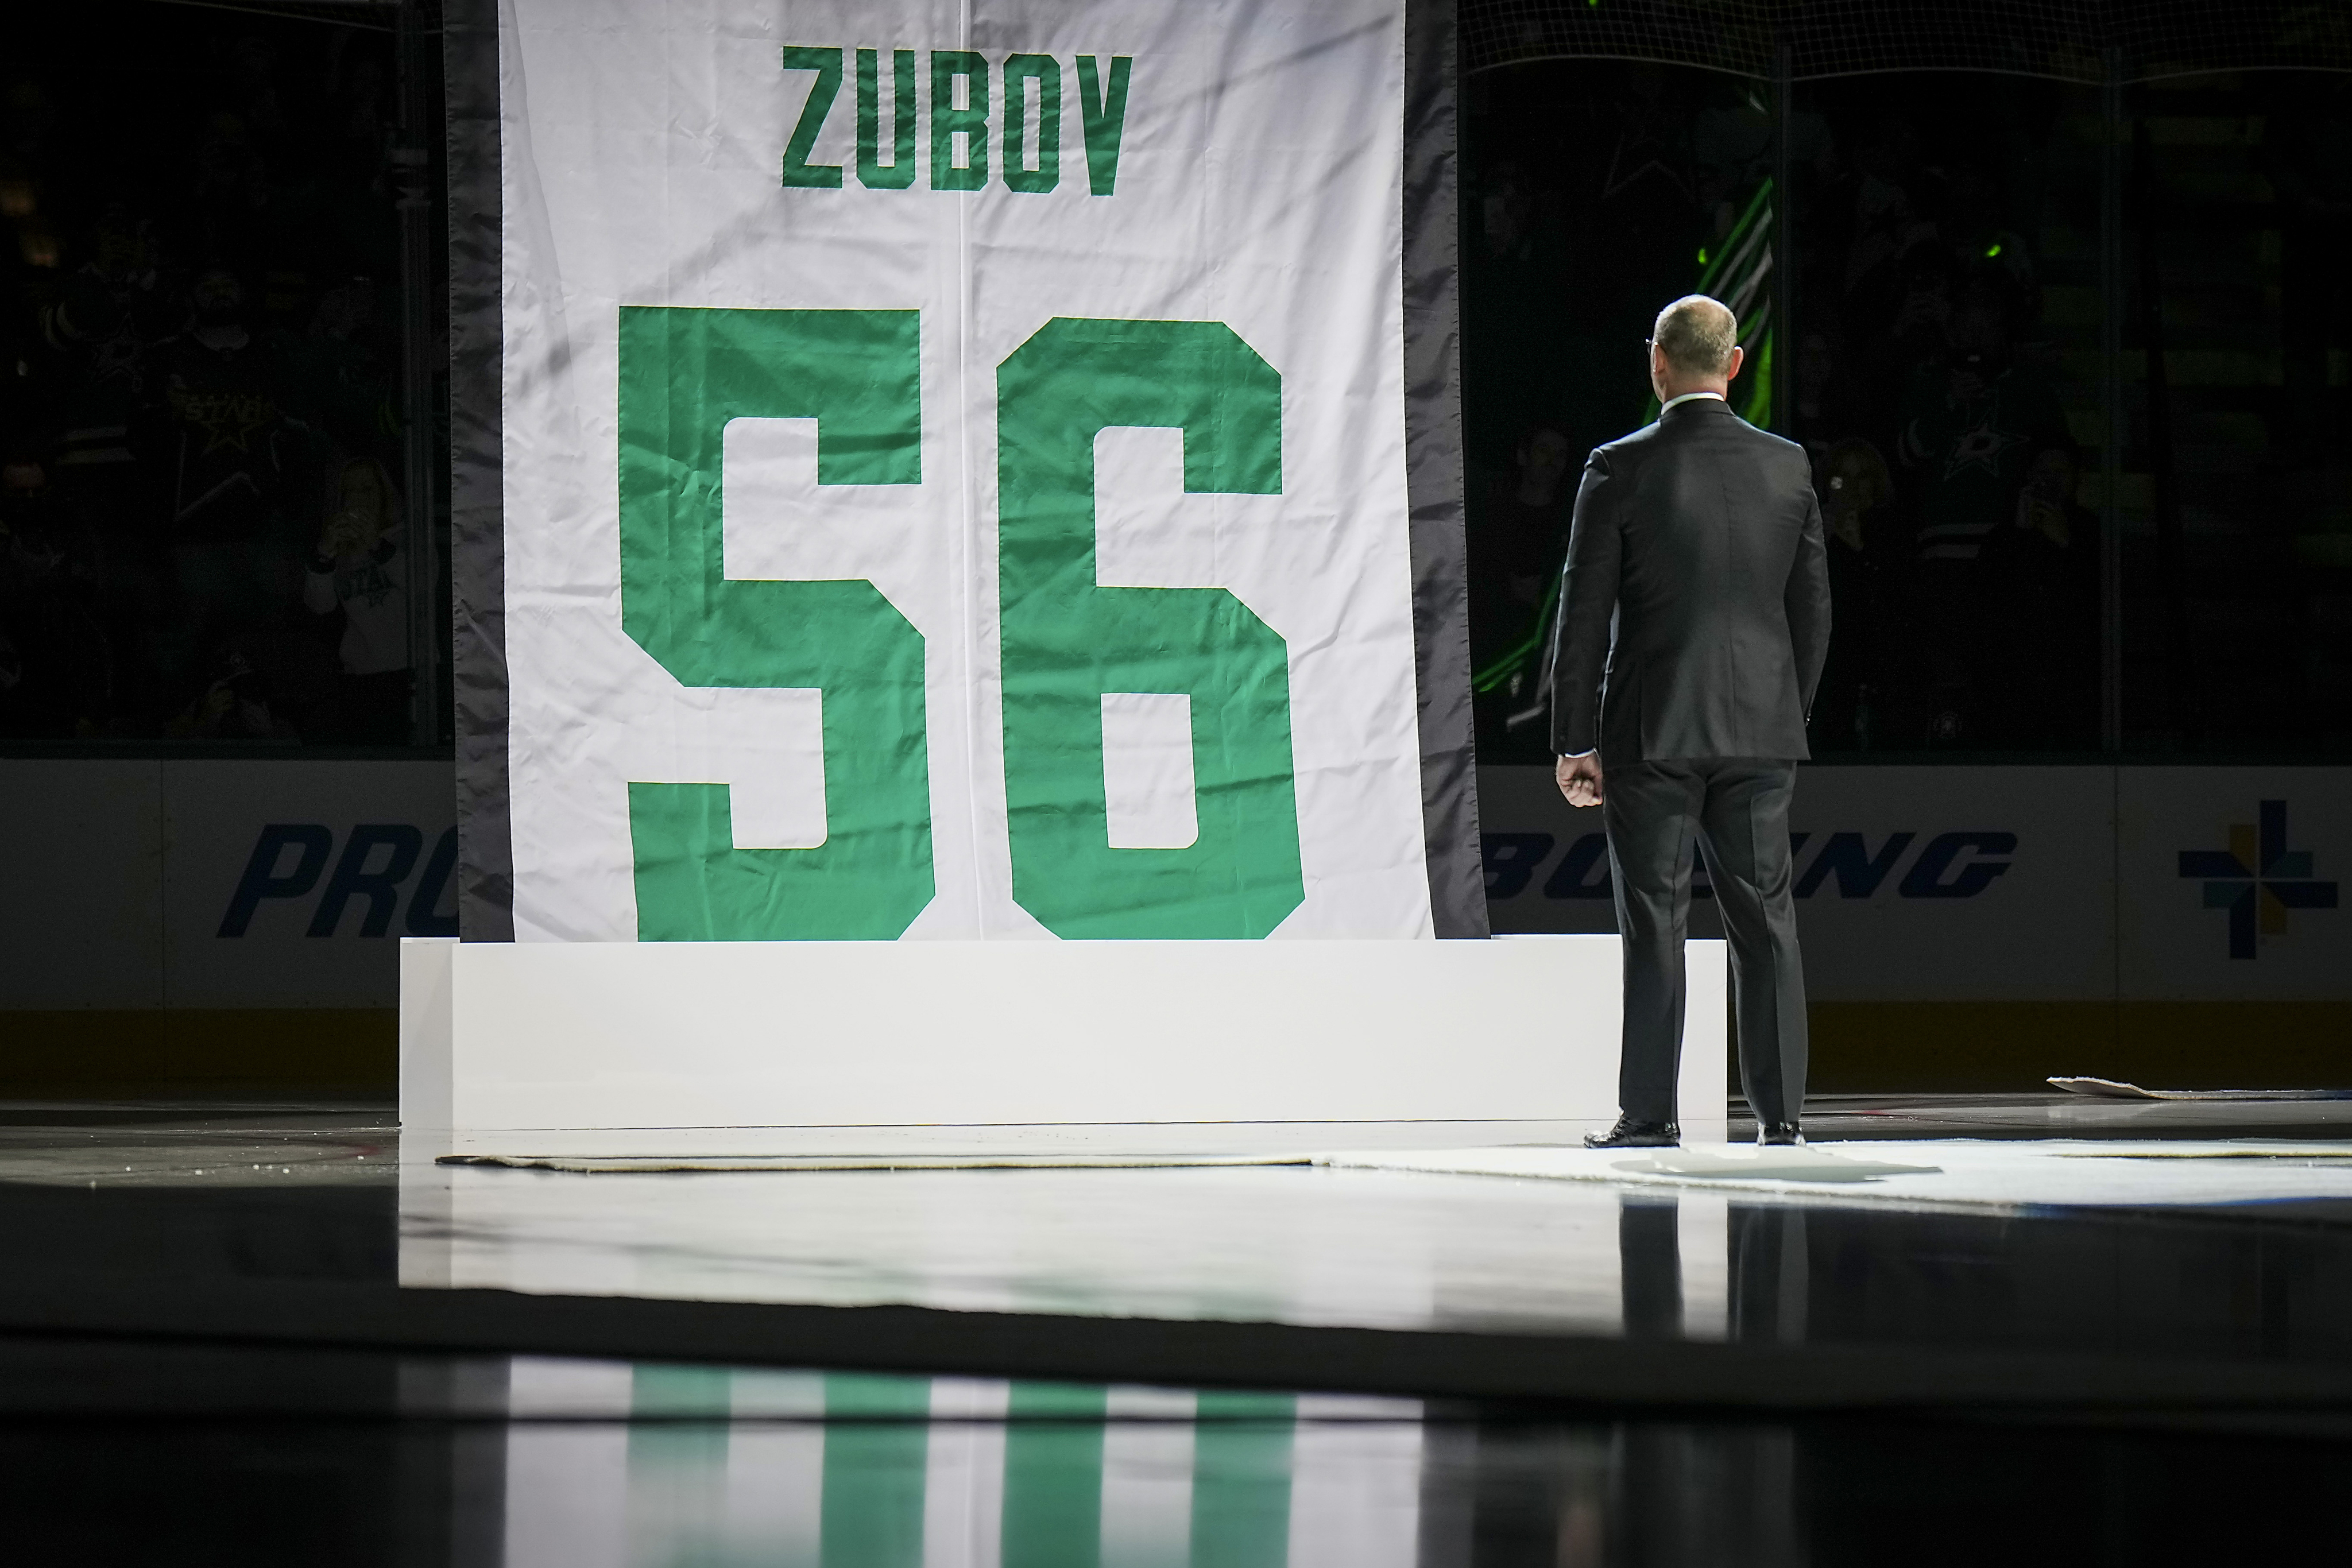 The banner is raised  Sergei Zubov Jersey Retirement 